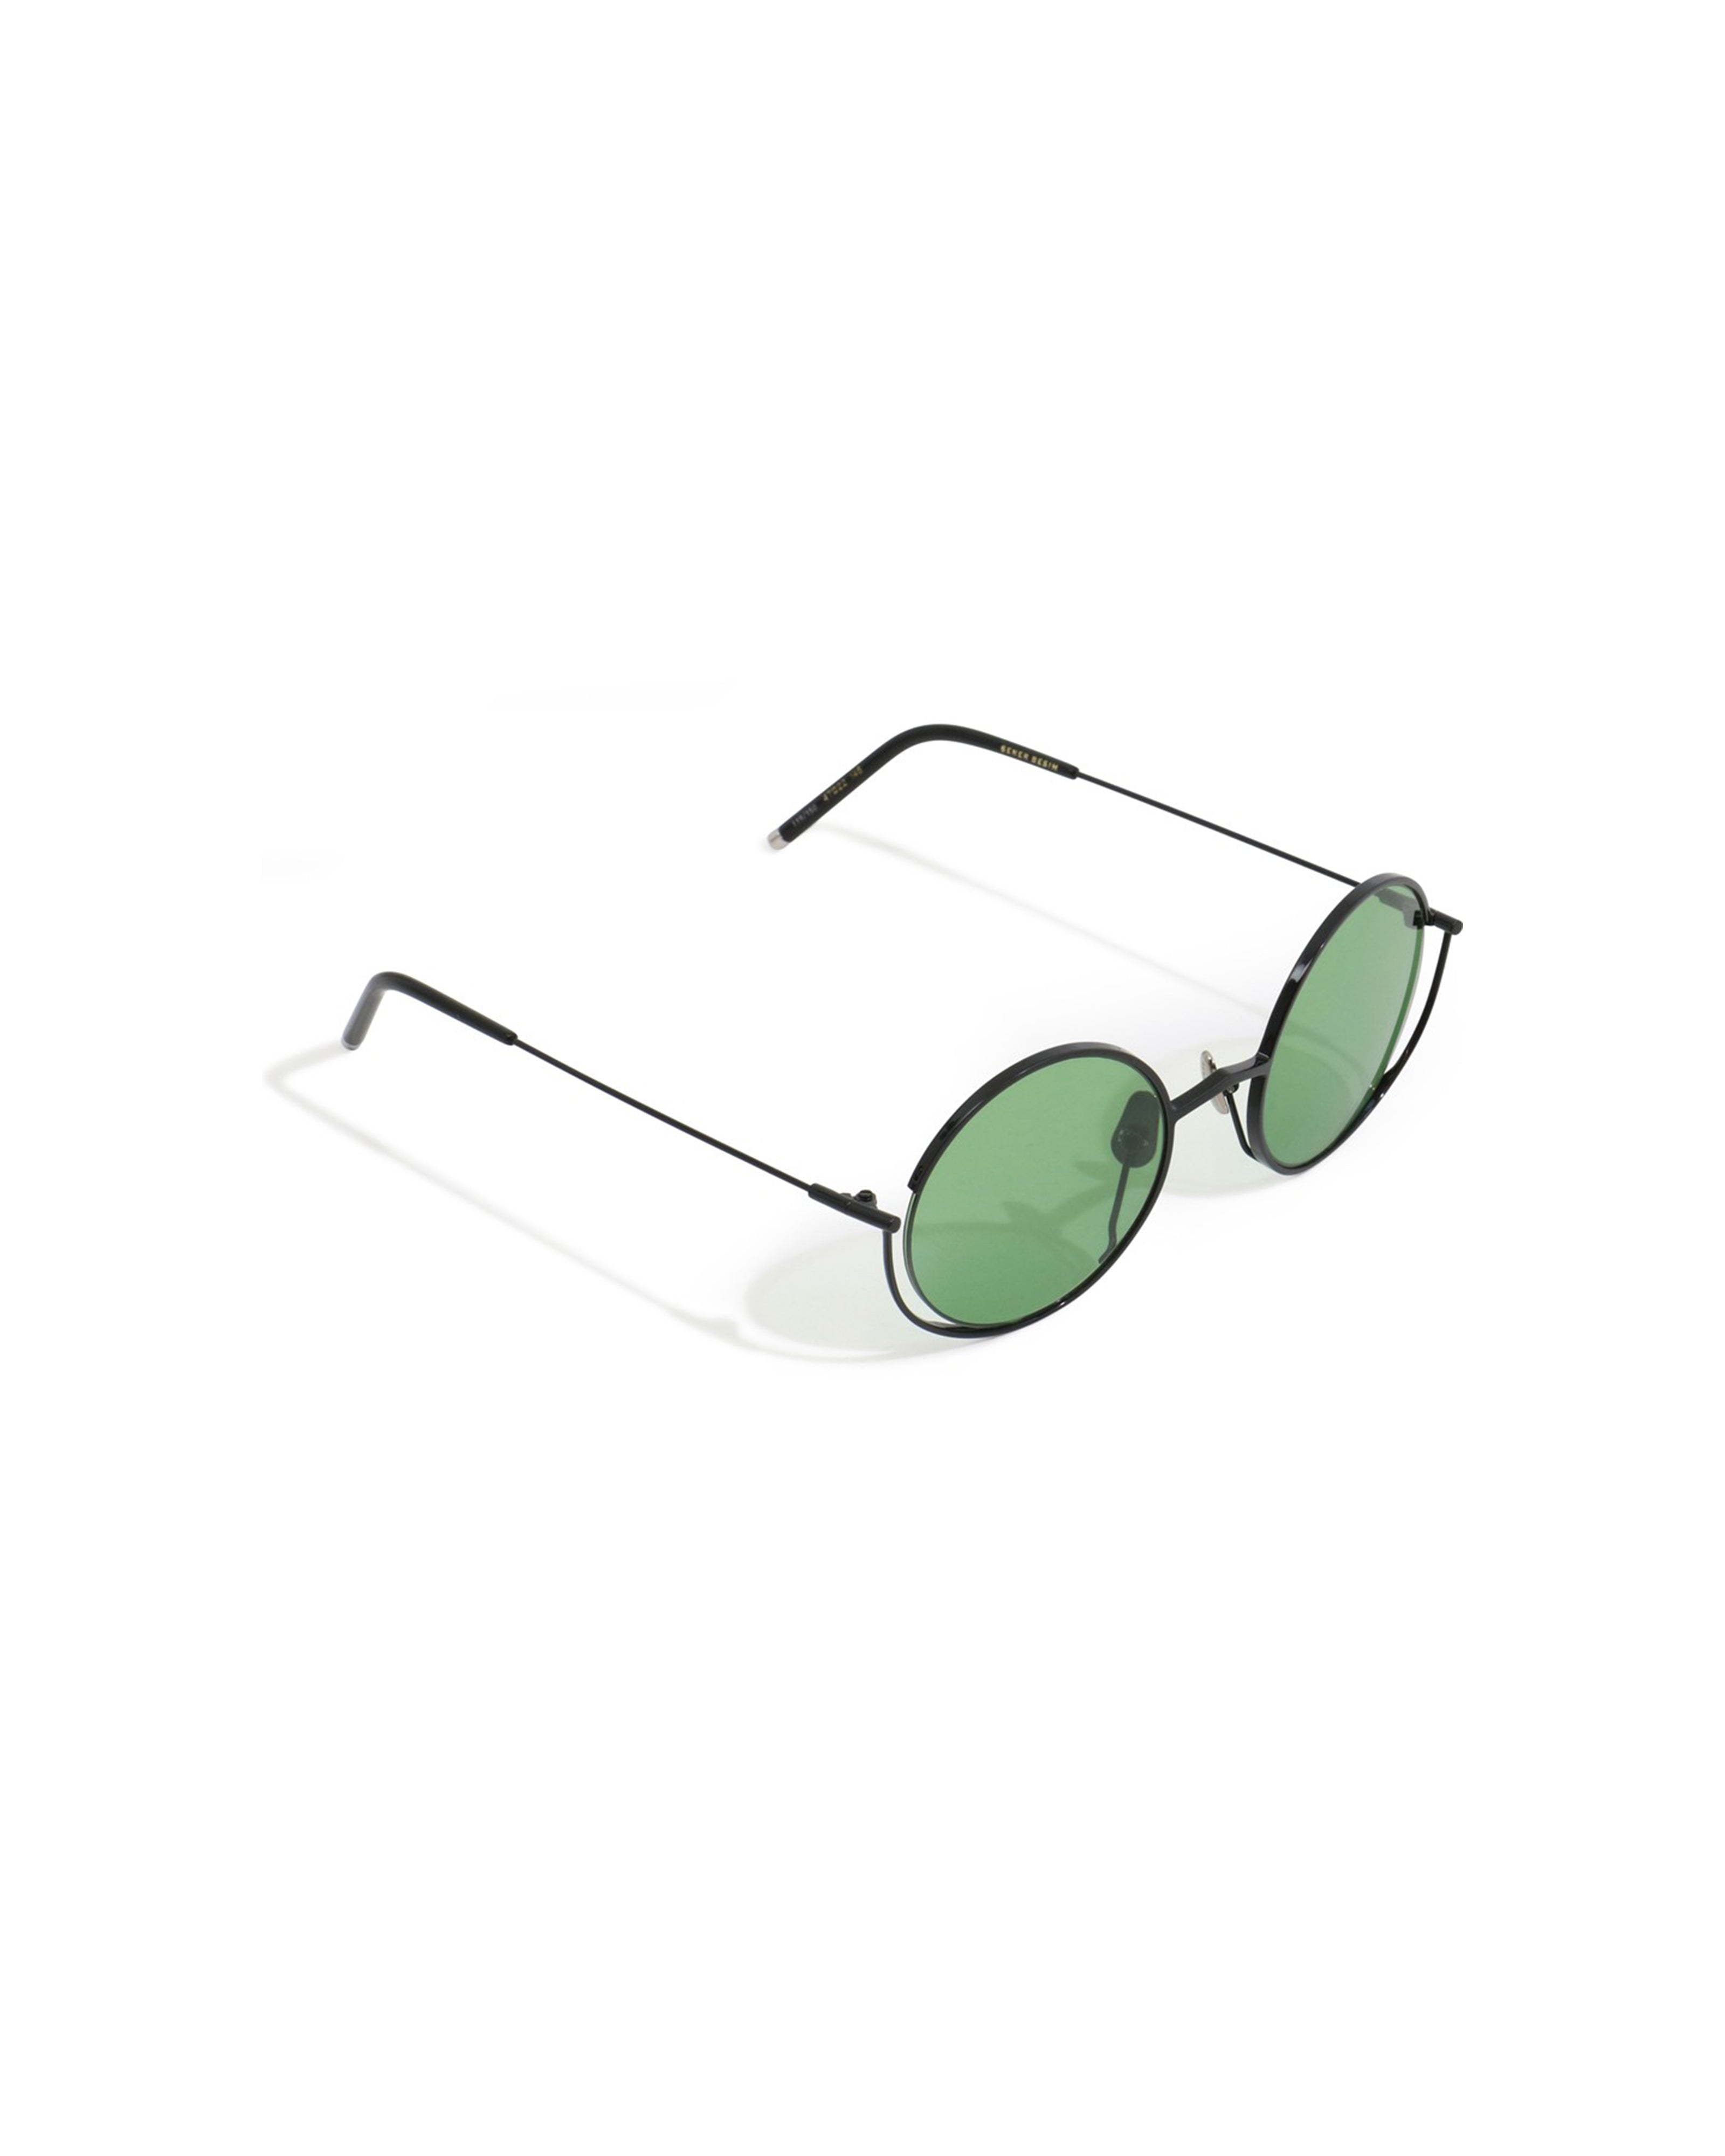     sener-besim-s5-sunglasses-nero-green-eyewear